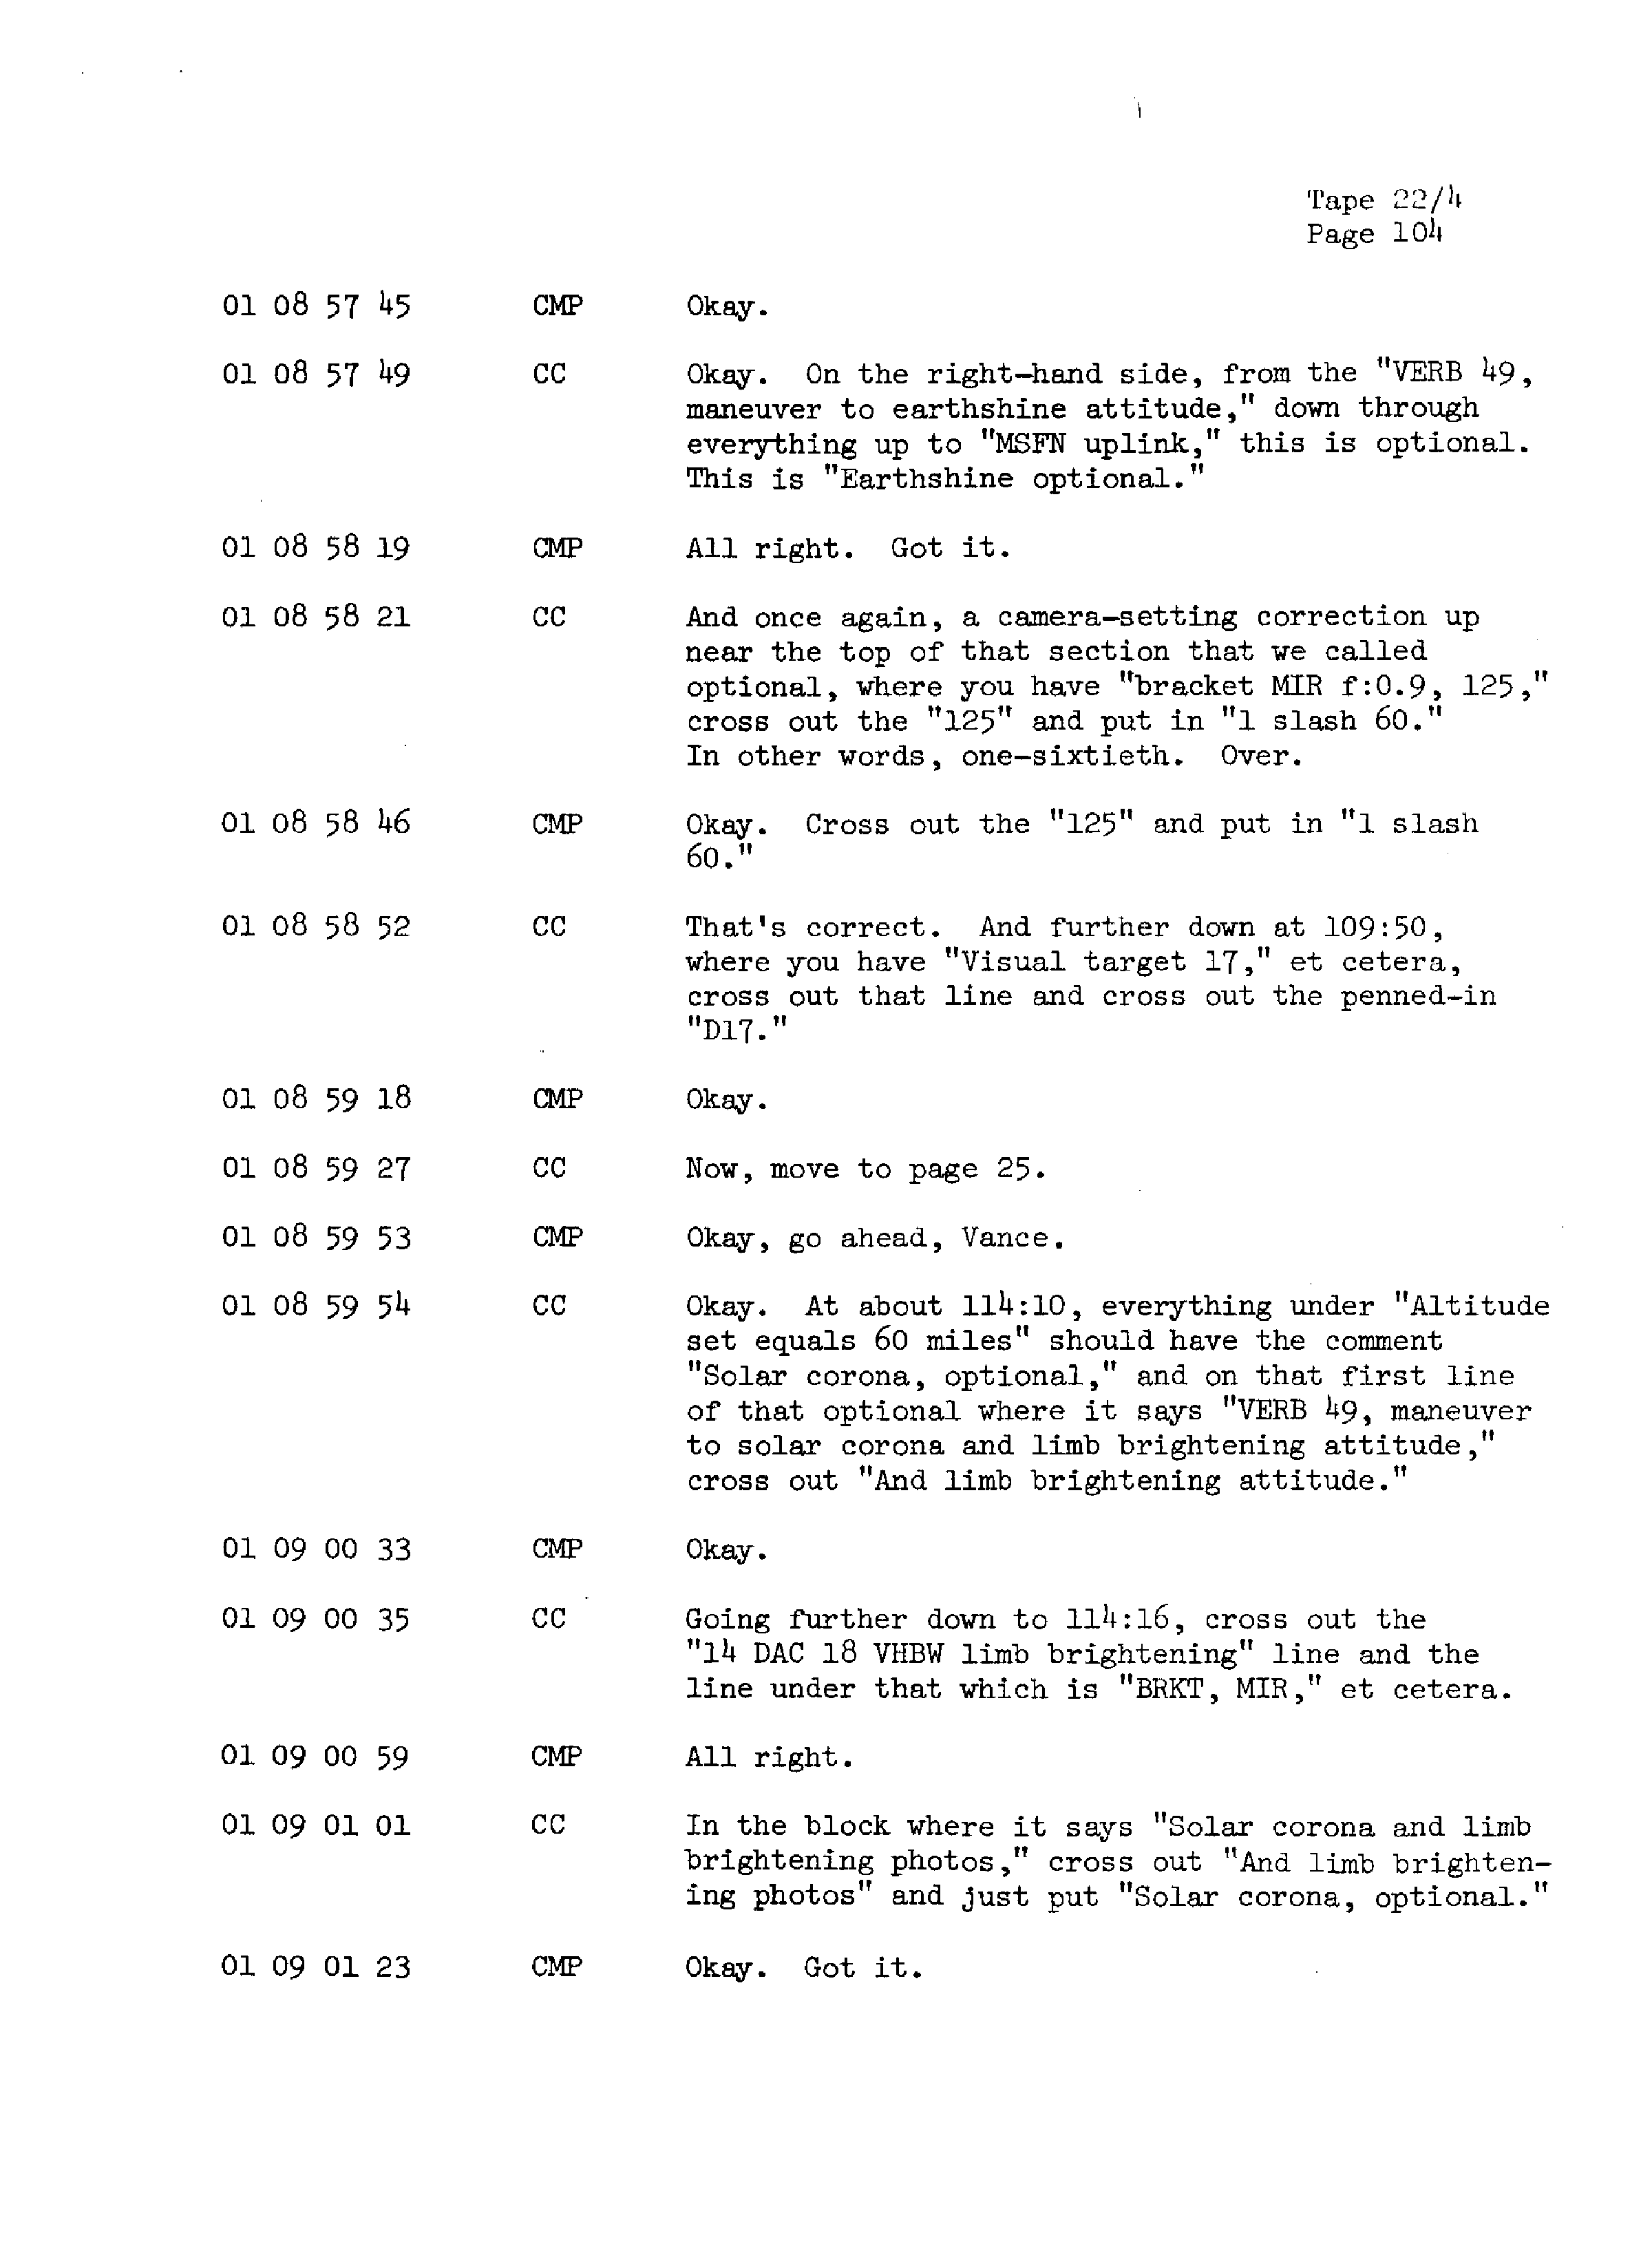 Page 111 of Apollo 13’s original transcript